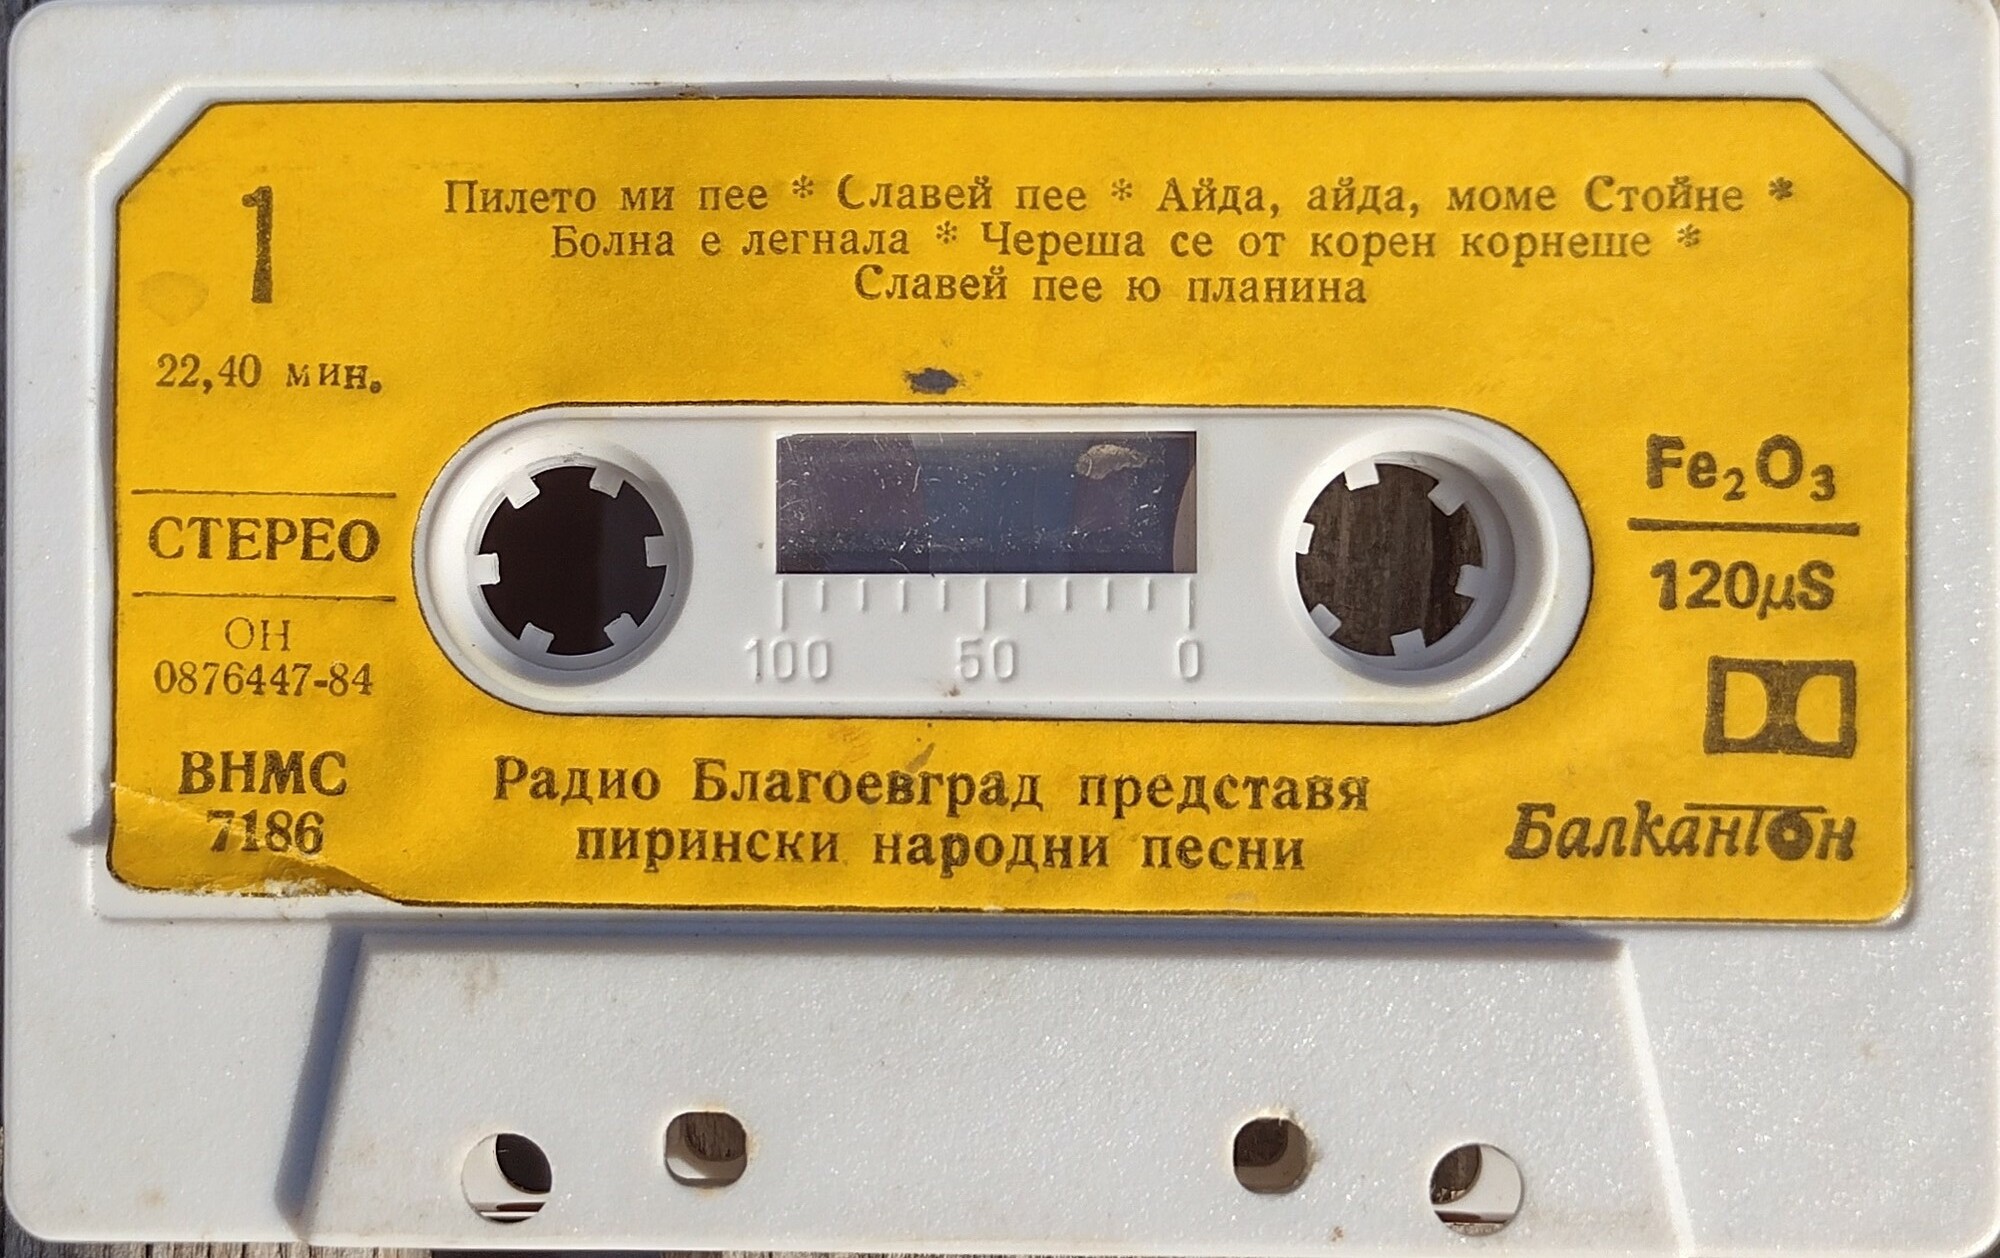 Радио Благоевград представя Пирински народни песни